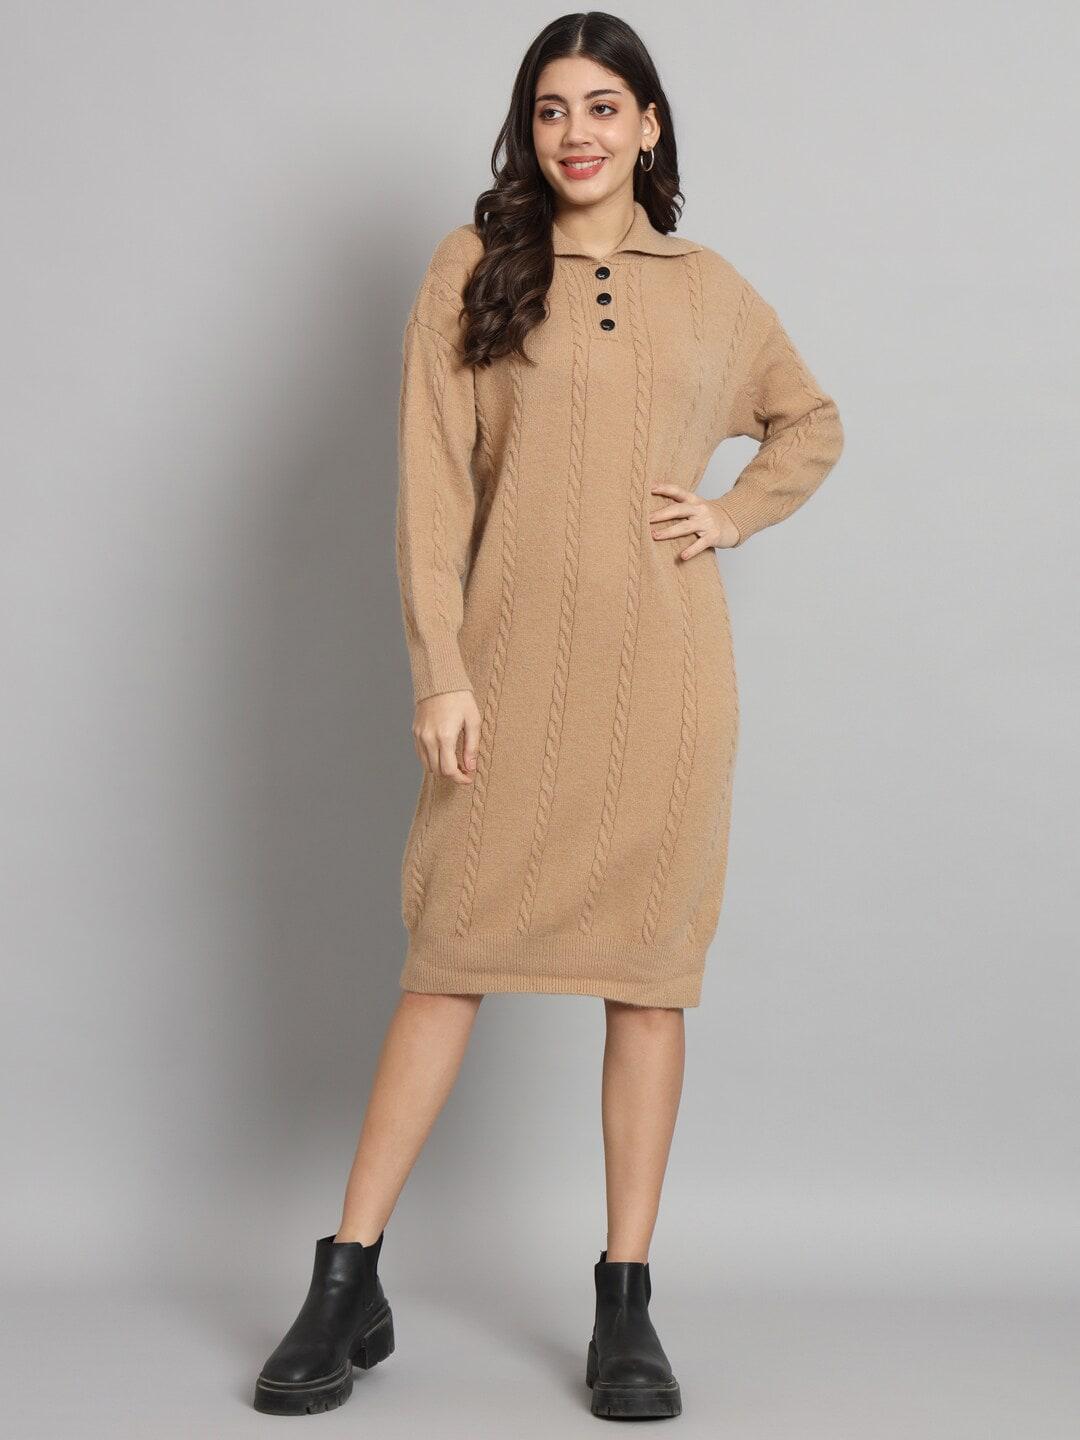 broowl brown woollen dress